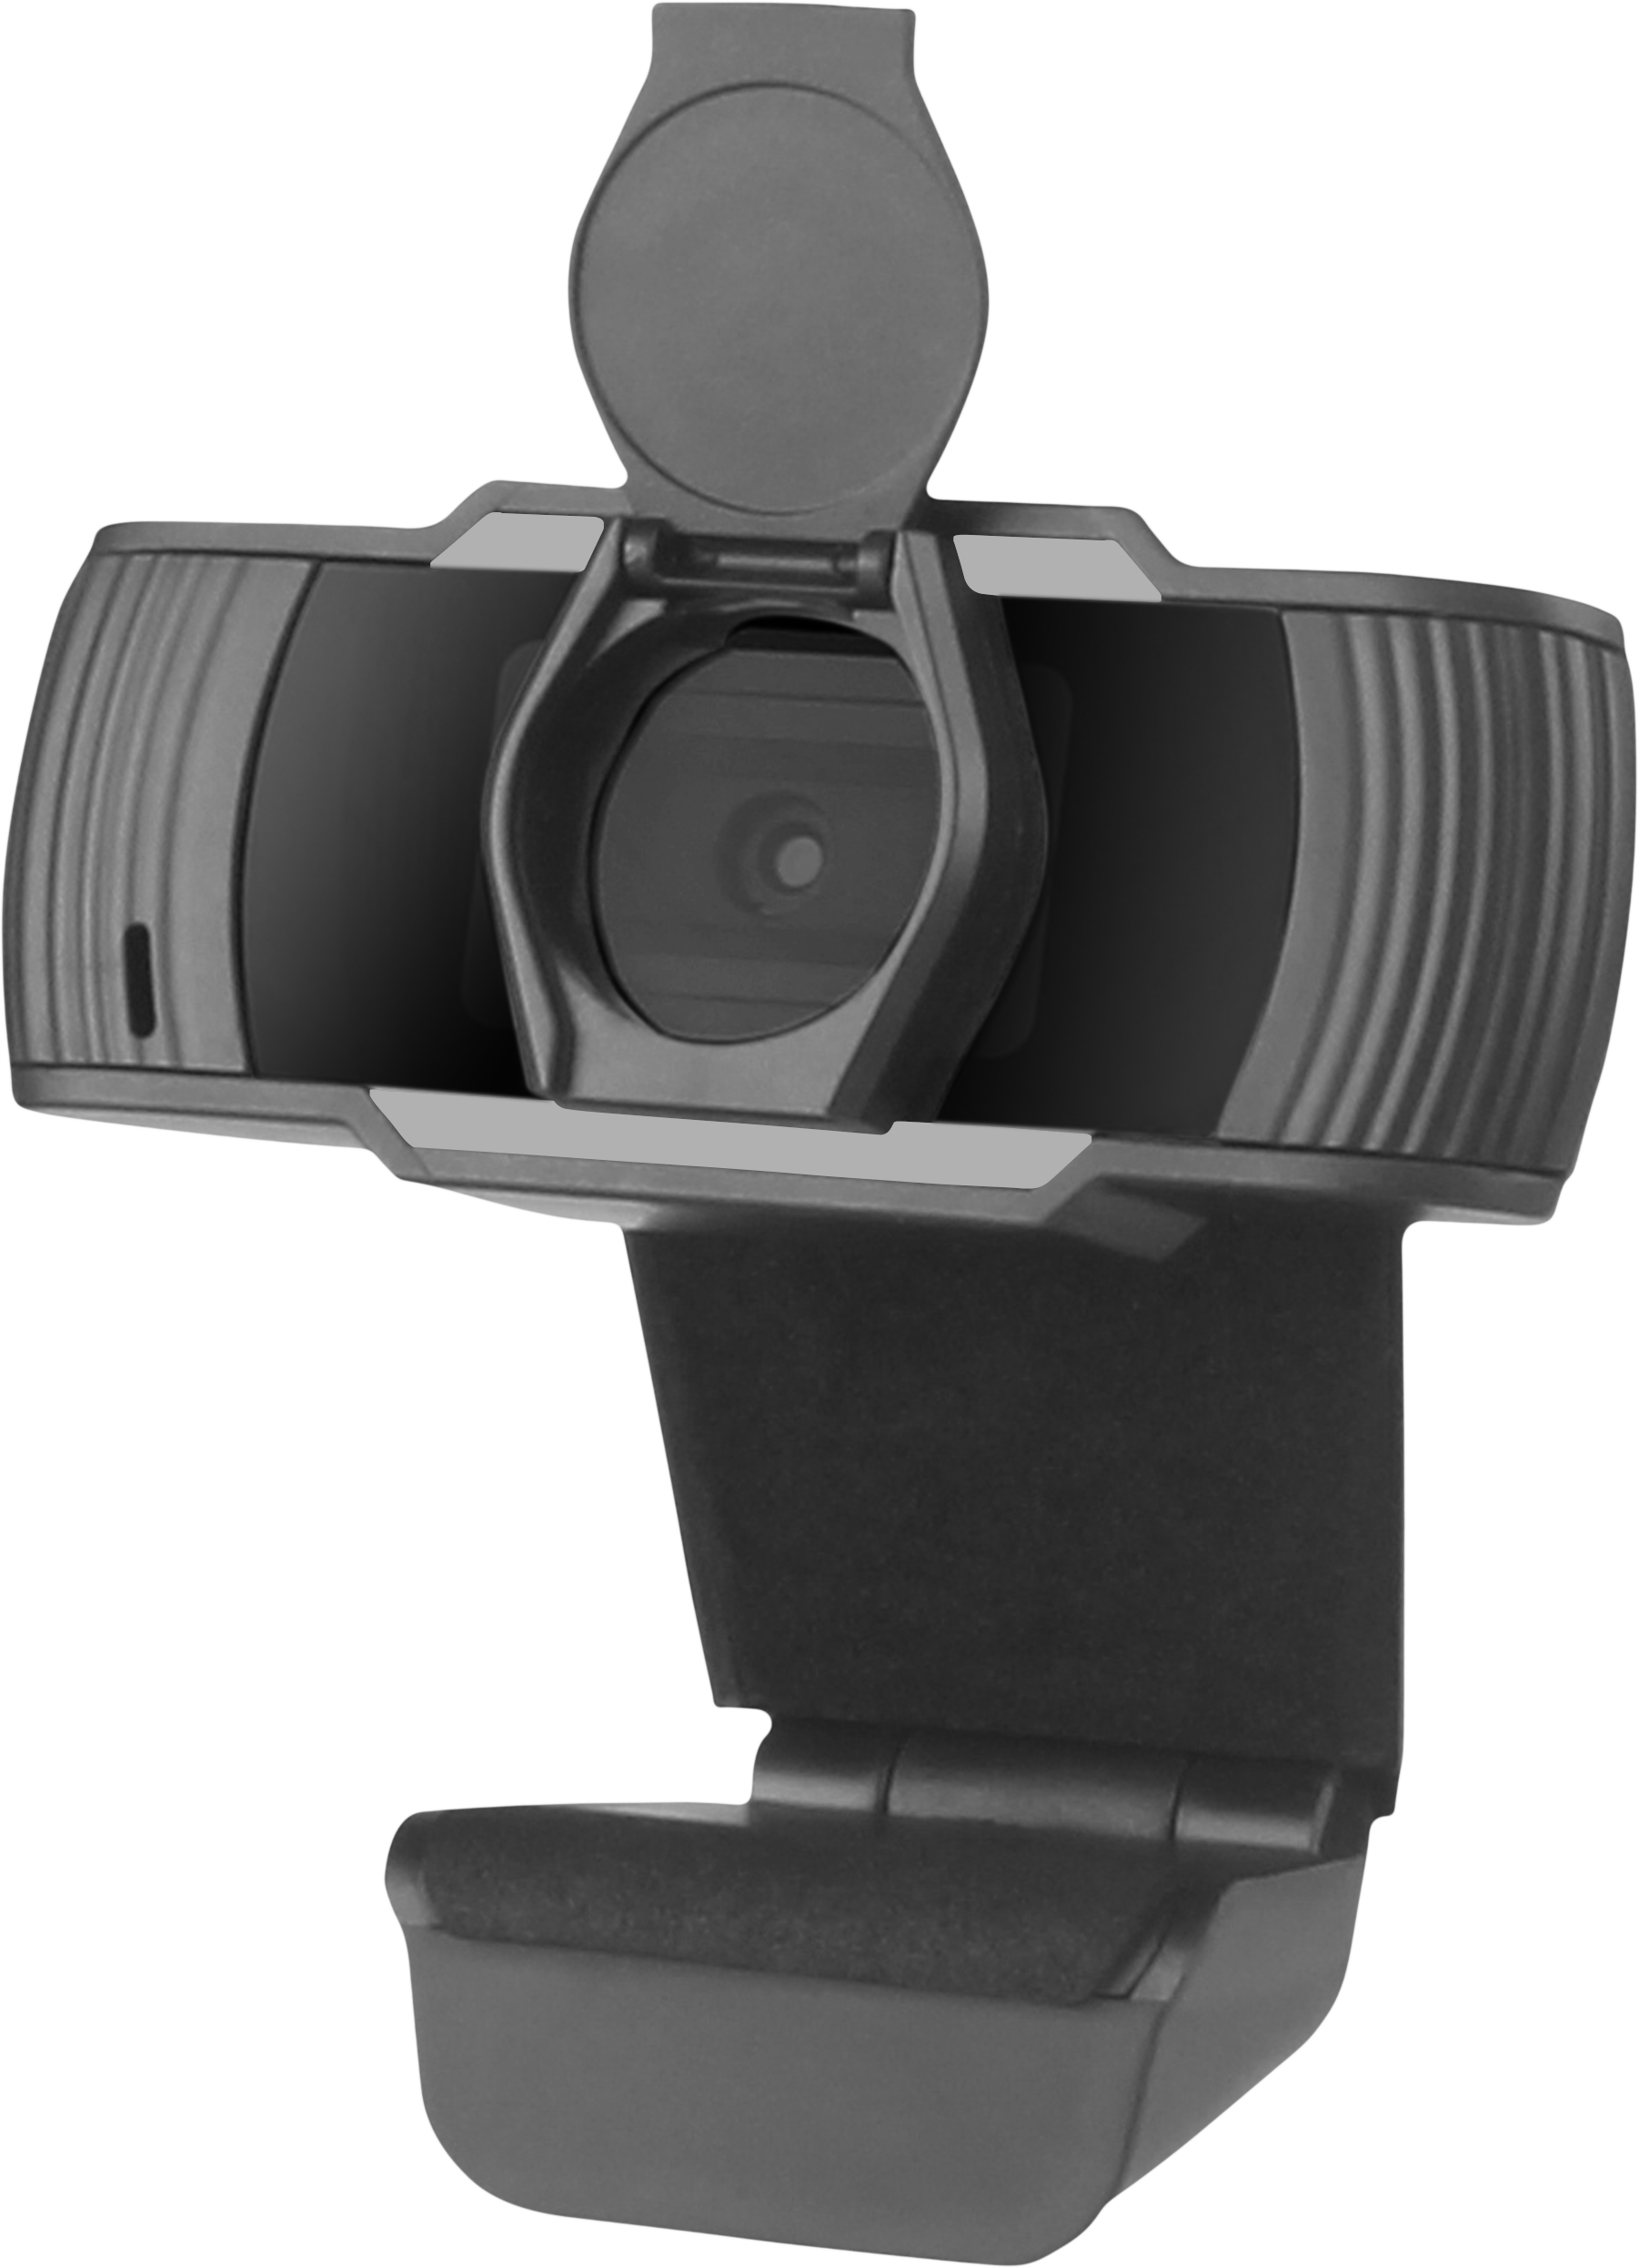 RECIT Webcam 720p HD, schwarz